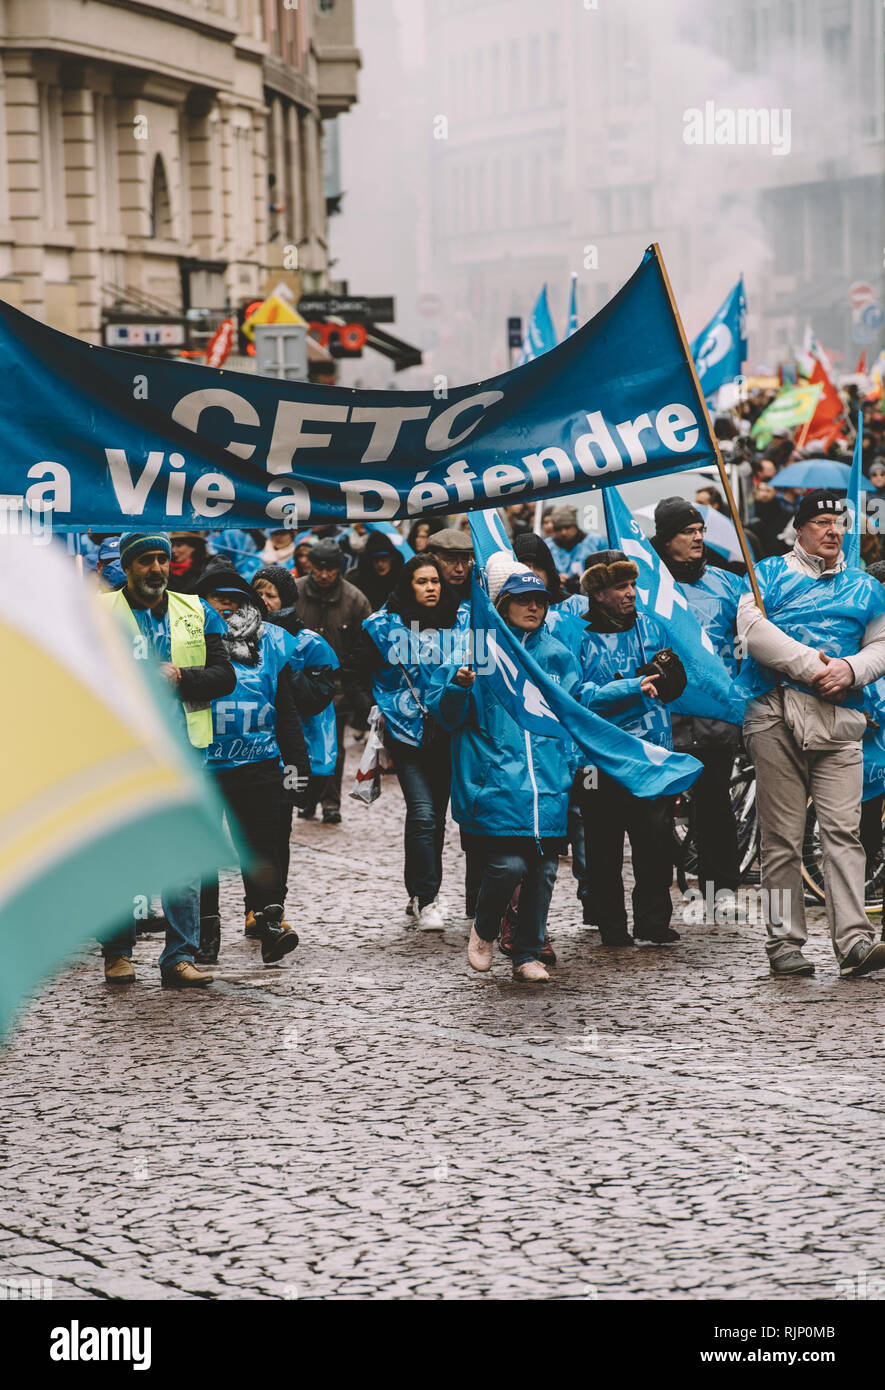 Estrasburgo, Francia - Mar 22, 2018: un grupo de personas portando banderas azules y la realización de reuniones de protesta organizadas por caminar en la calle, Francia Foto de stock